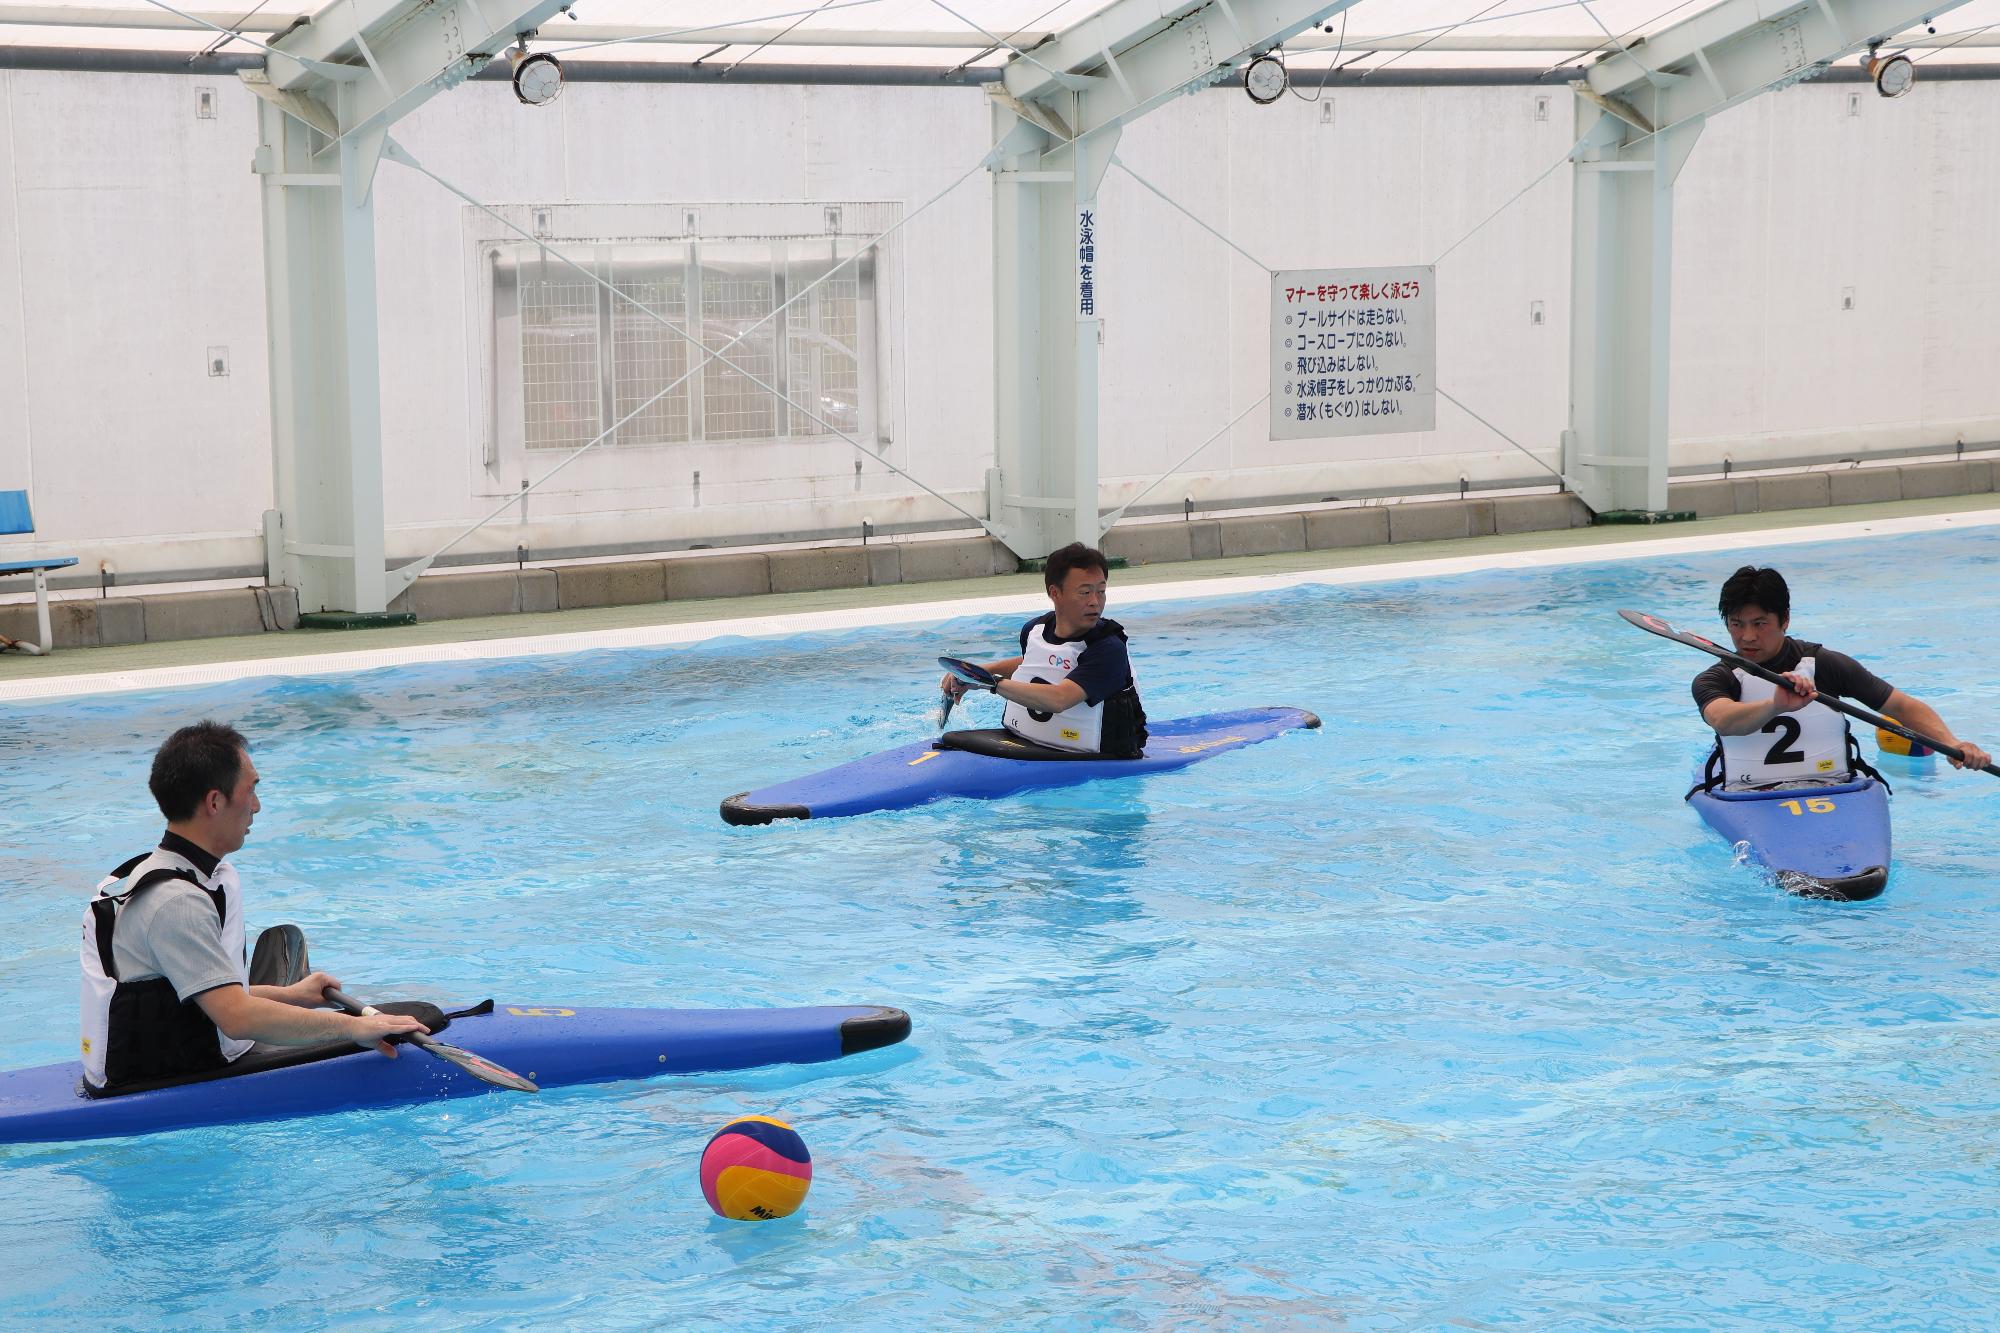 カヌーポロ選手養成講座に参加し、プールでカヌーを漕ぐ練習をしている参加者らの写真